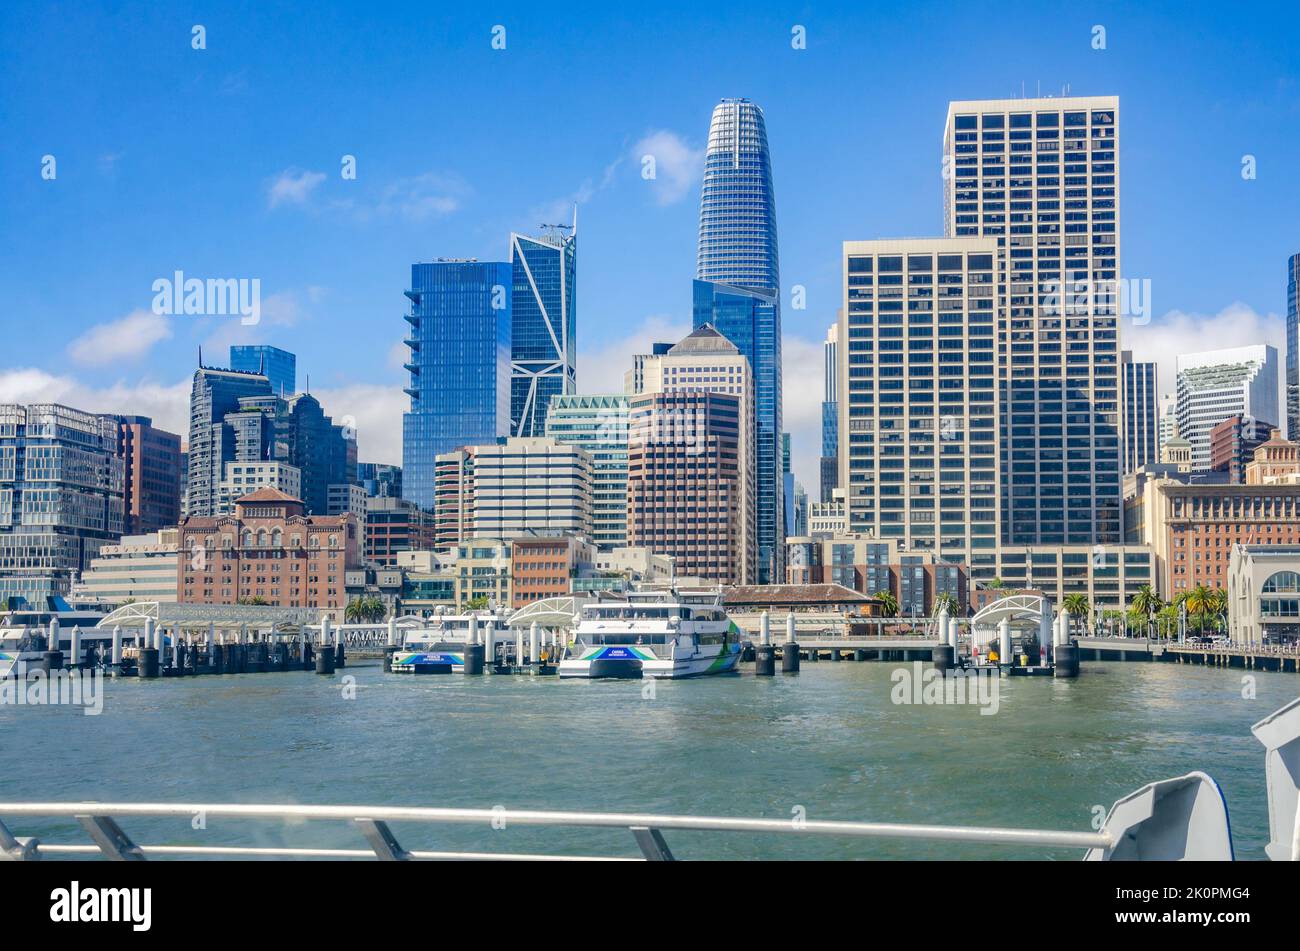 Blick auf Wolkenkratzer, die Teil der Skyline von San Francisco sind, von der Rückseite einer abfahrenden San Francisco Bay Ferry aus gesehen Stockfoto